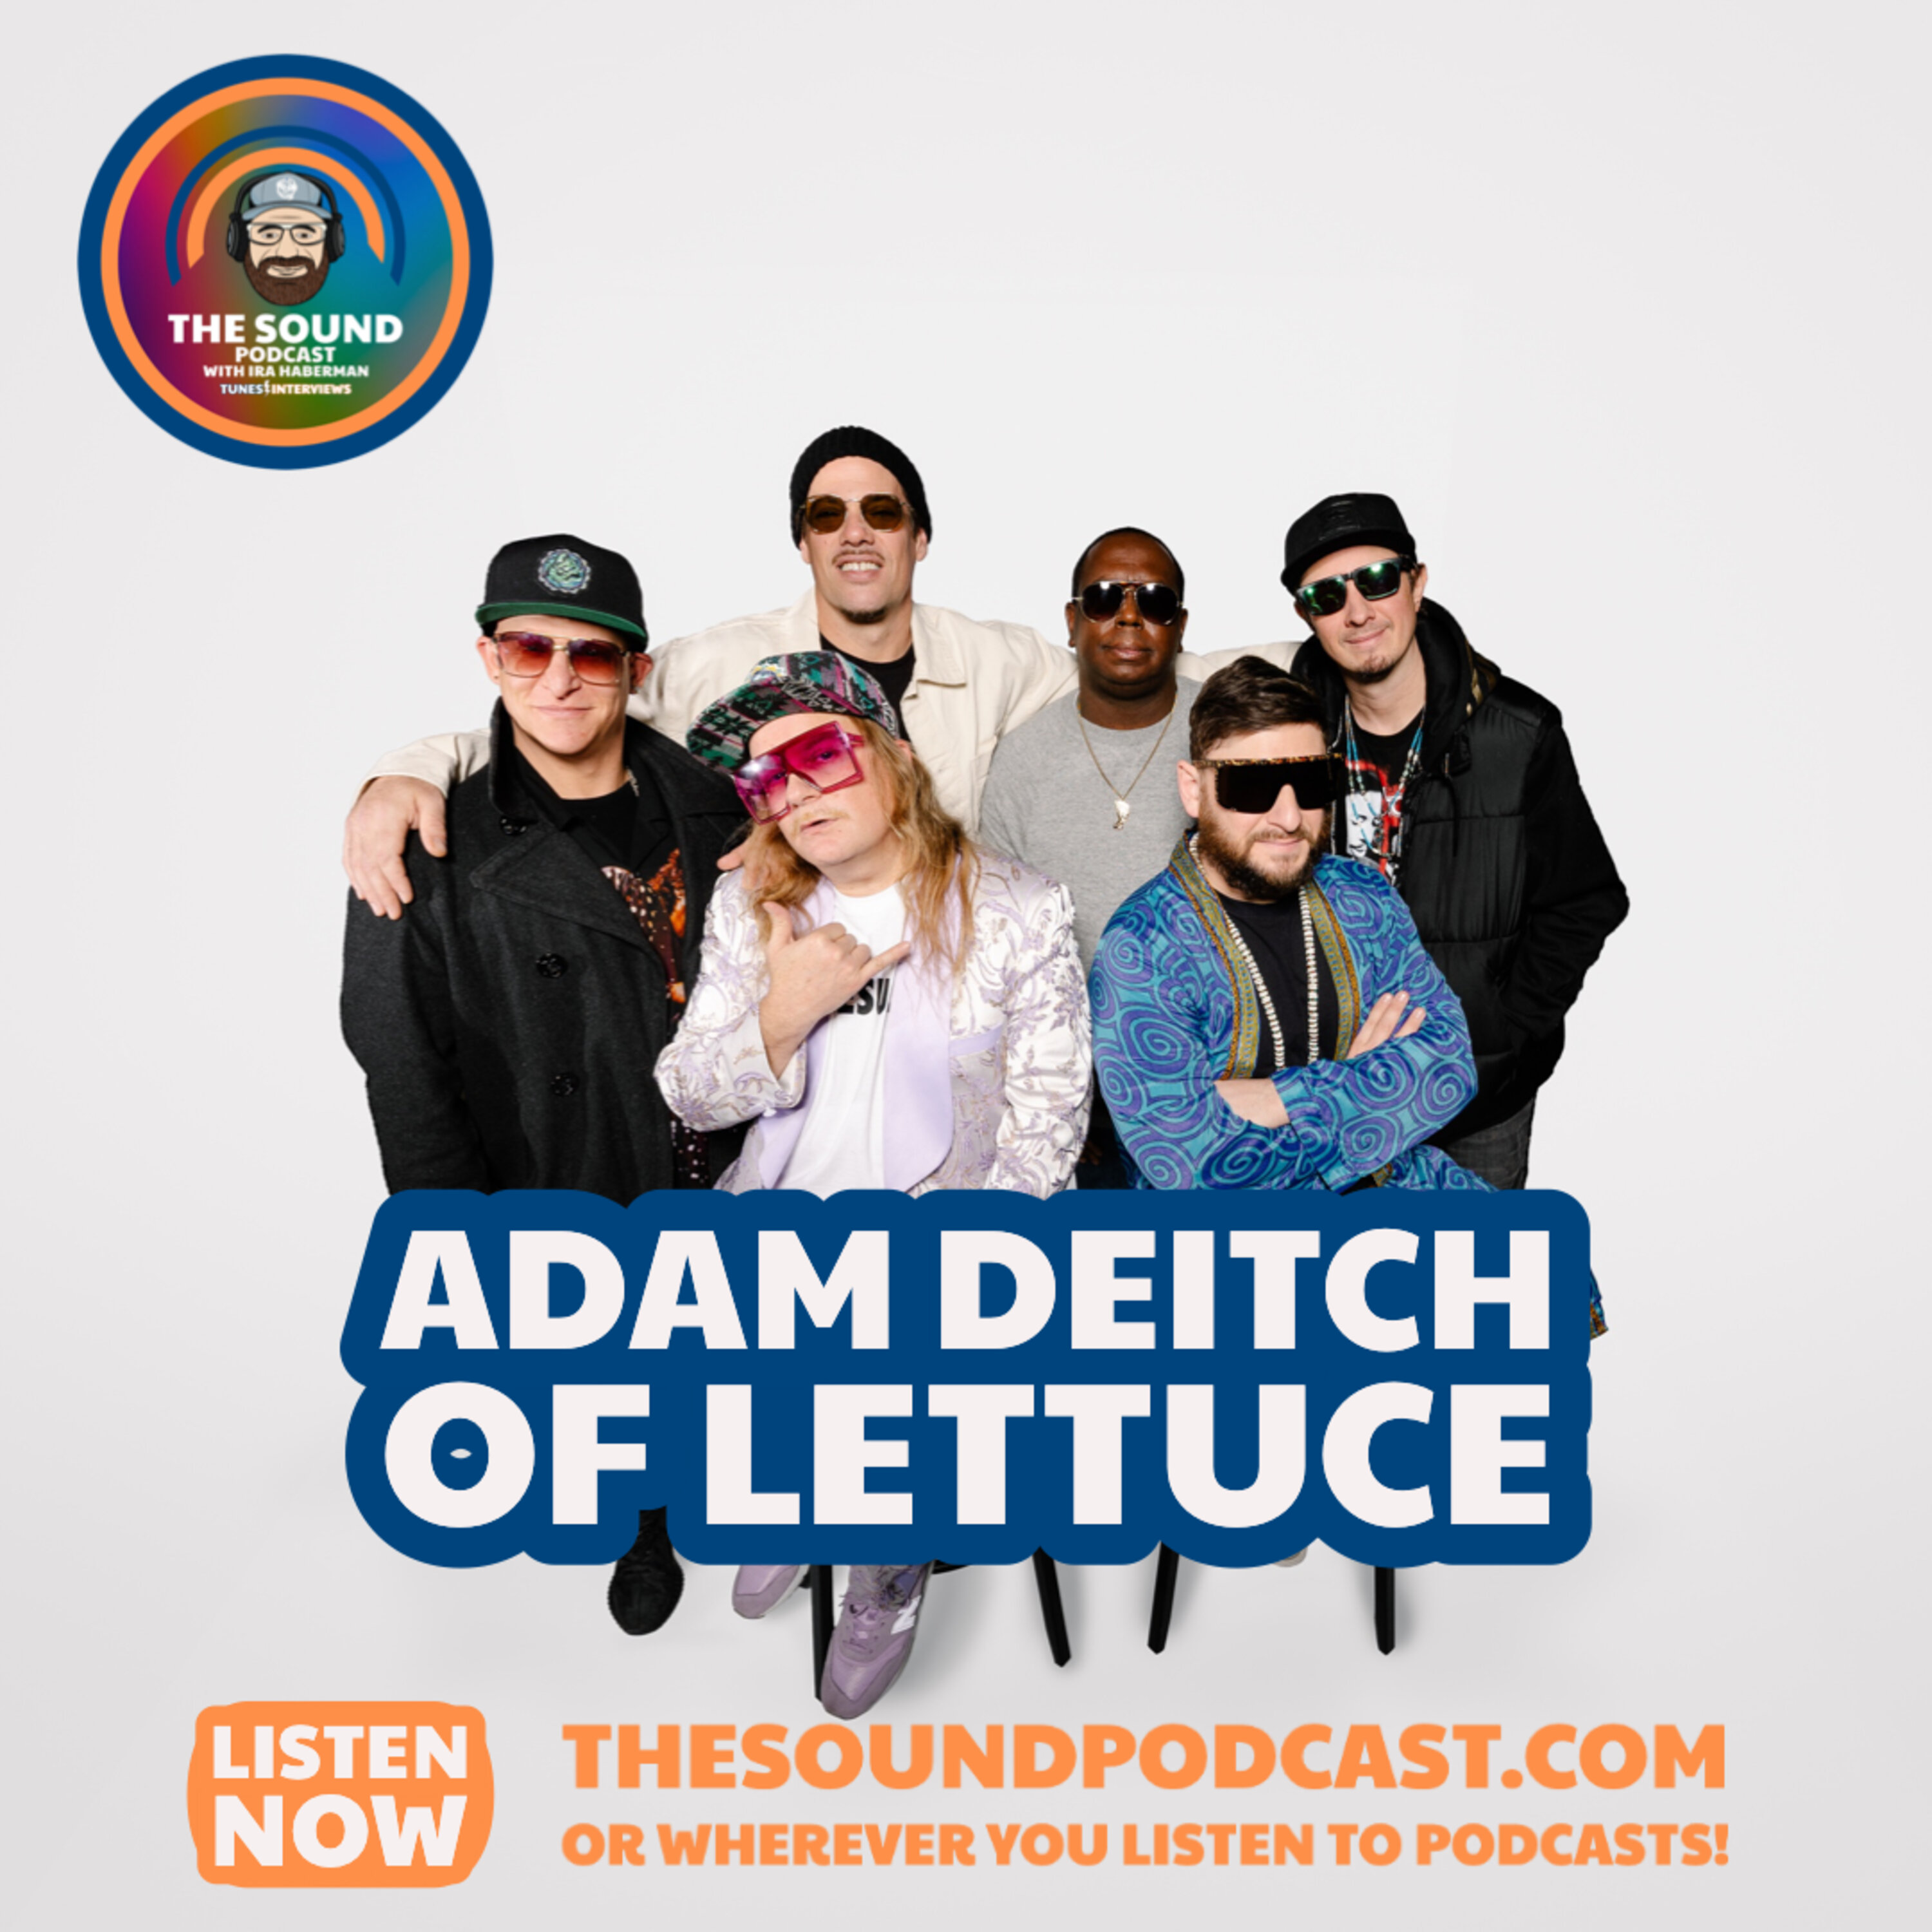 Adam Deitch of Lettuce Image